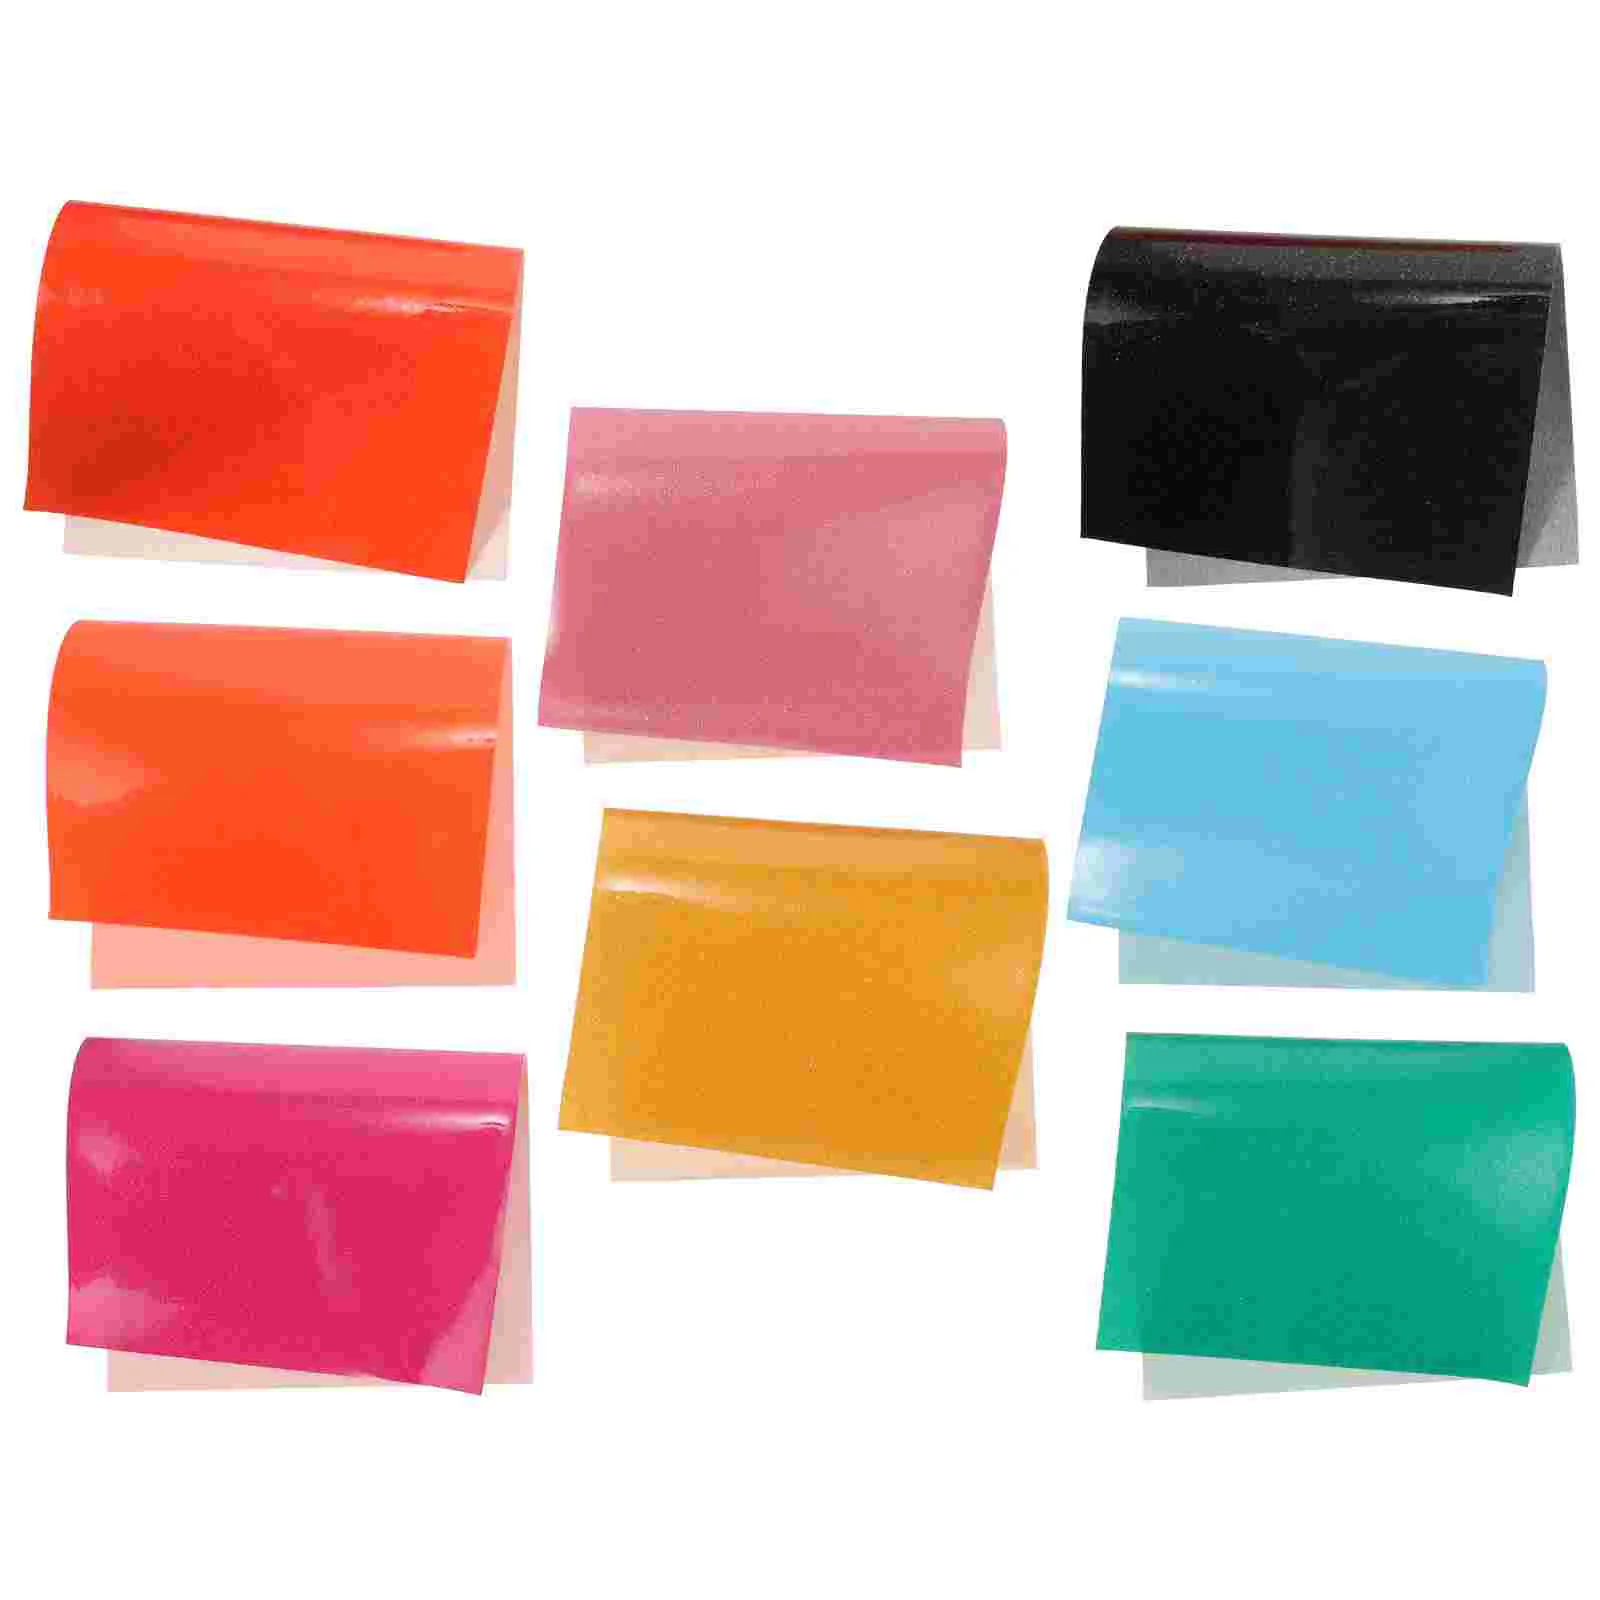 

8 Sheets Jelly Tote Bag Making Sheet Jelly Bag Materials Crafting Materials